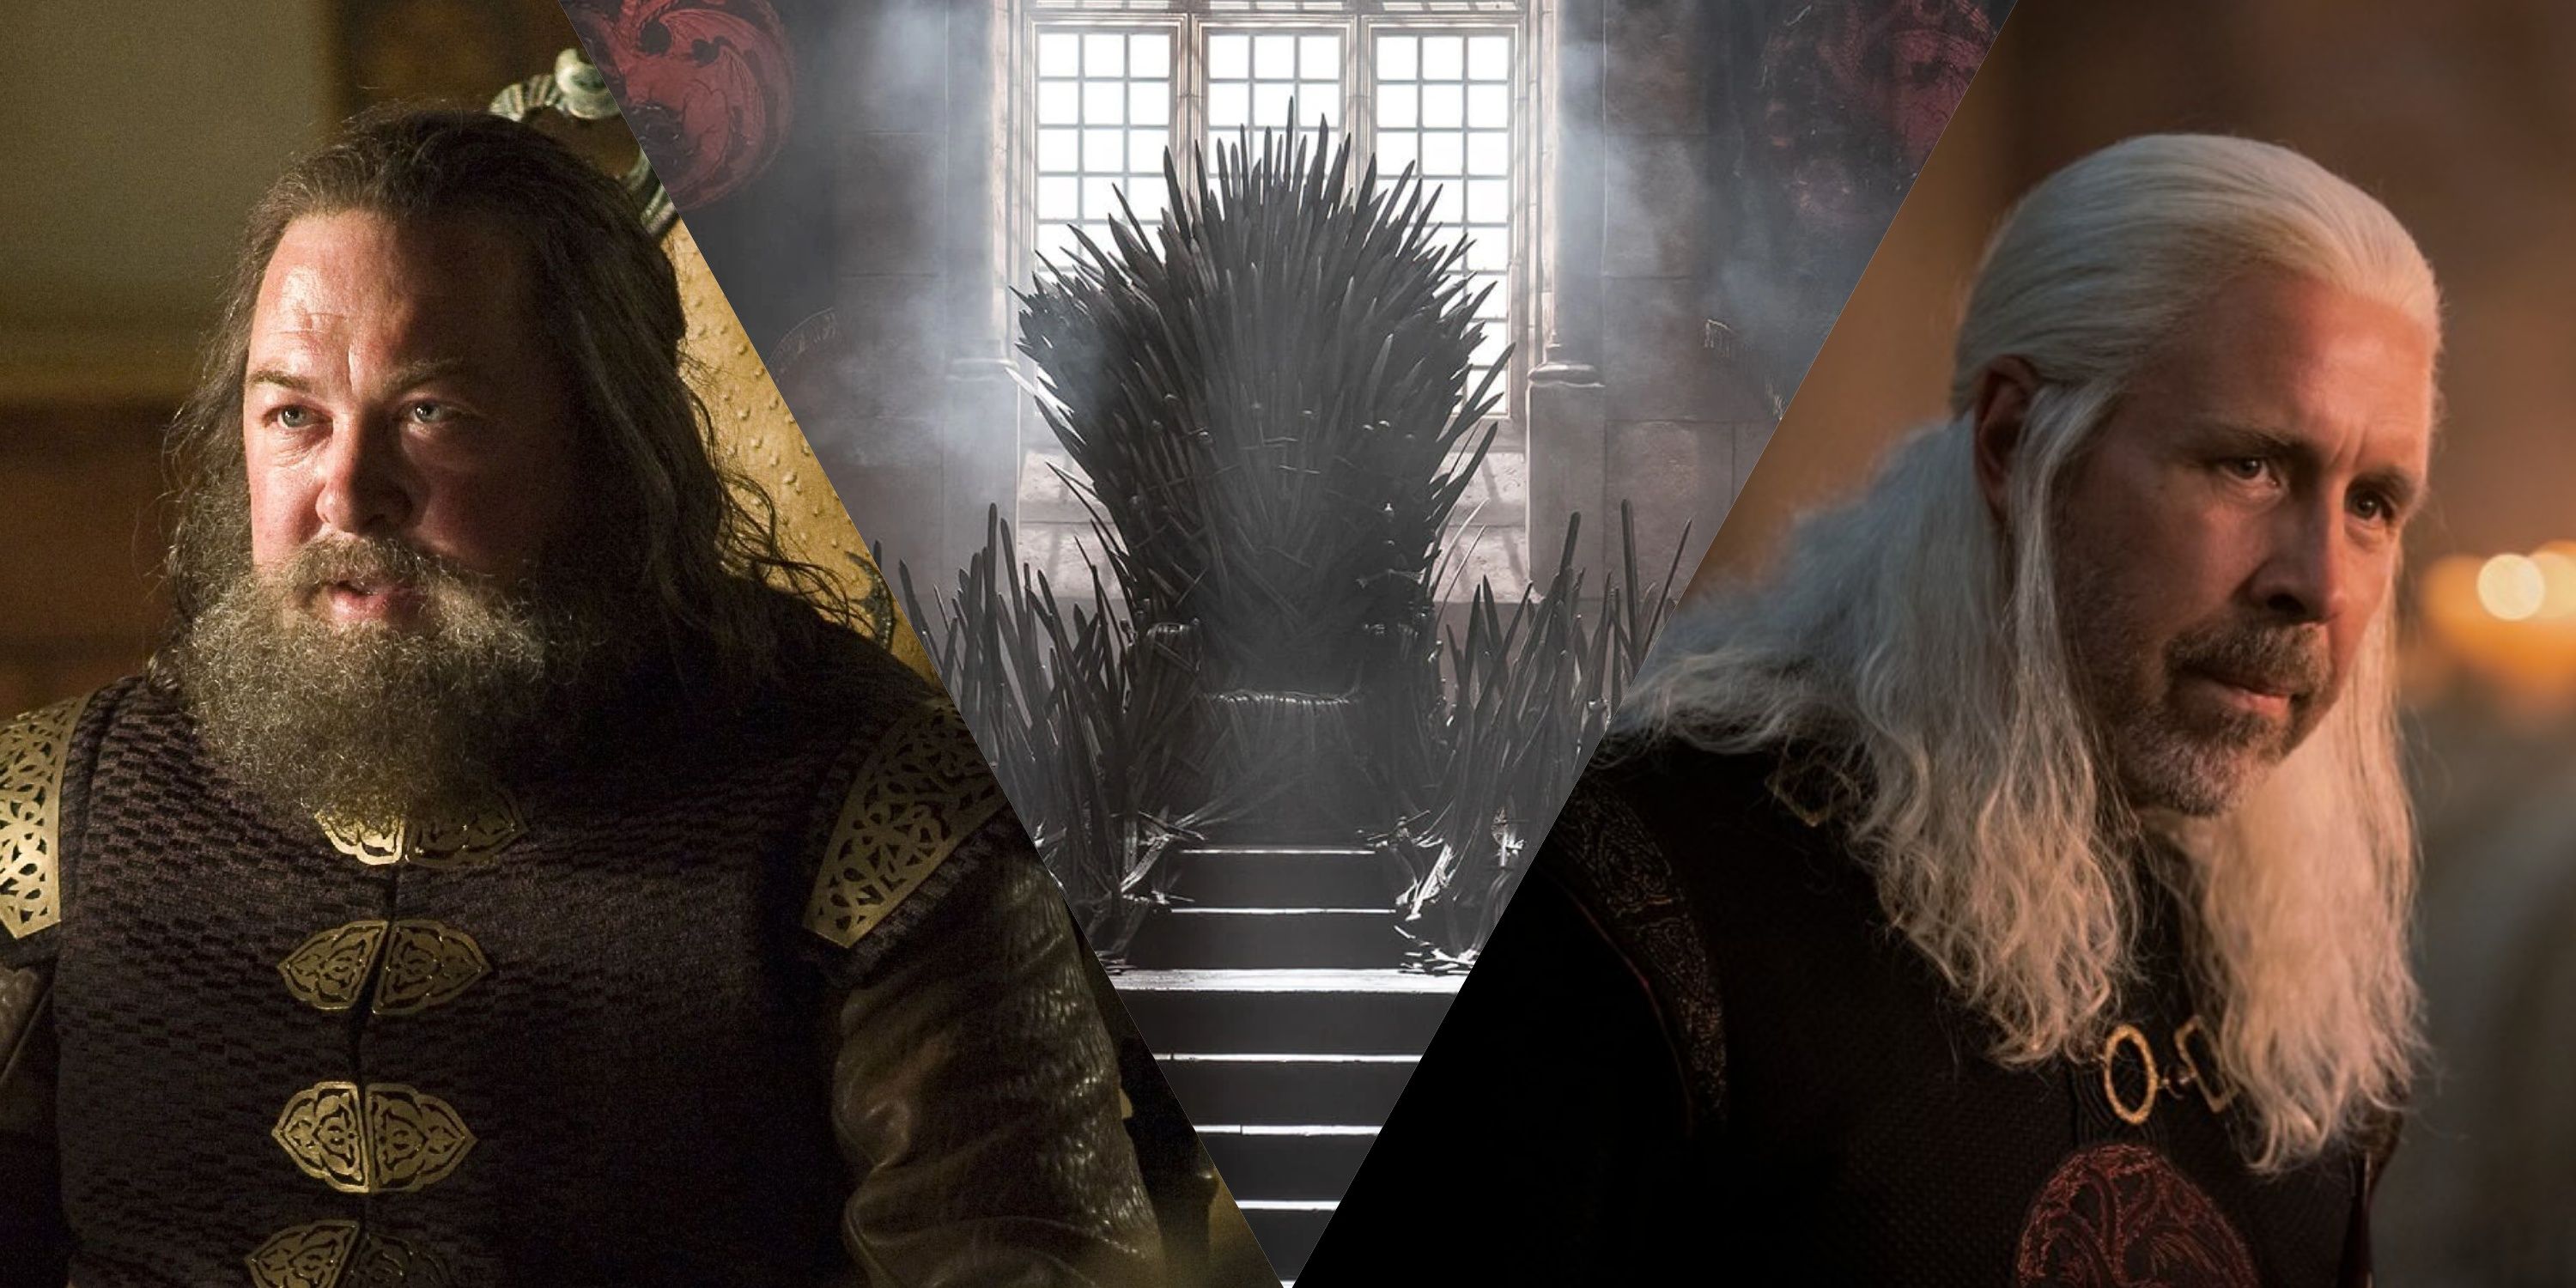 Robert Baratheon, the Iron Throne, and Viserys Targaryen